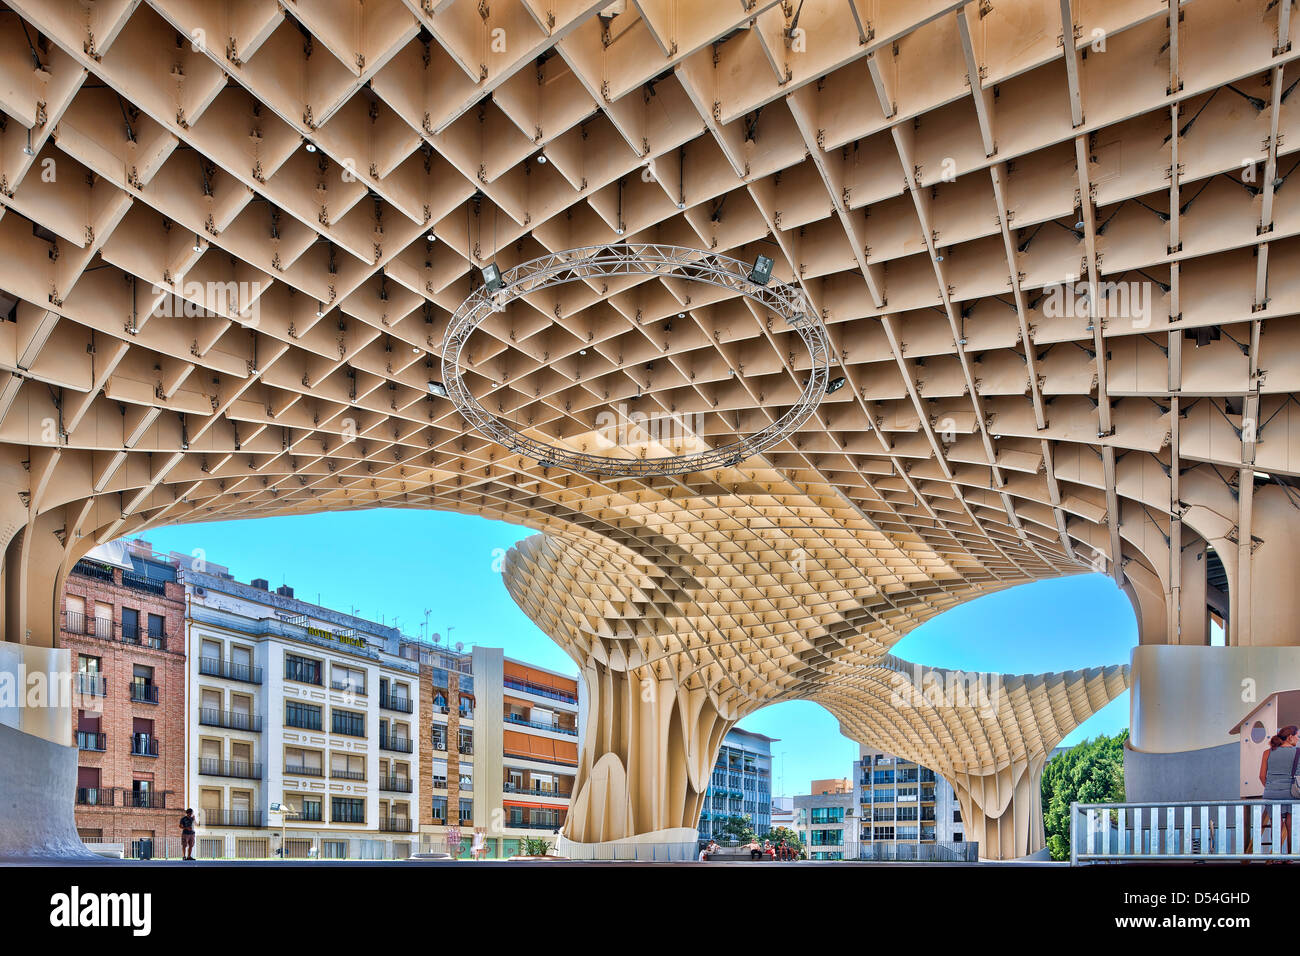 Sevilla, Spanien, die Metropol Parasol in der Plaza De La Encarnacion Stockfoto